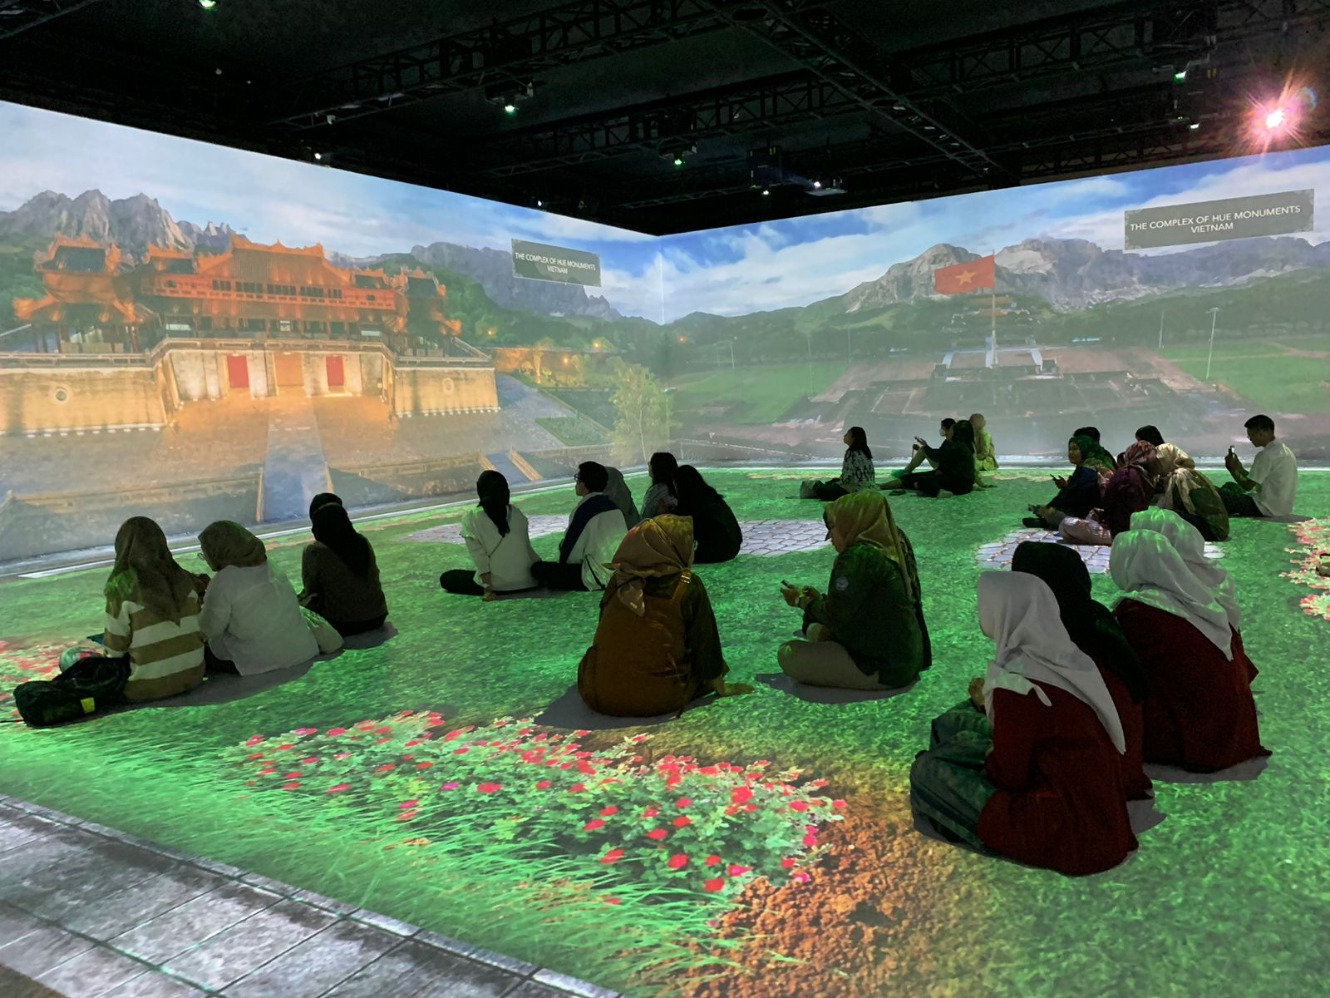 Suasana pameran The Magical Korea-ASEAN Cultural Heritage Immersive Experience di Museum Nasional, Jakarta. (Sumber gambar: Hypeabis.id/Luke Andaresta)